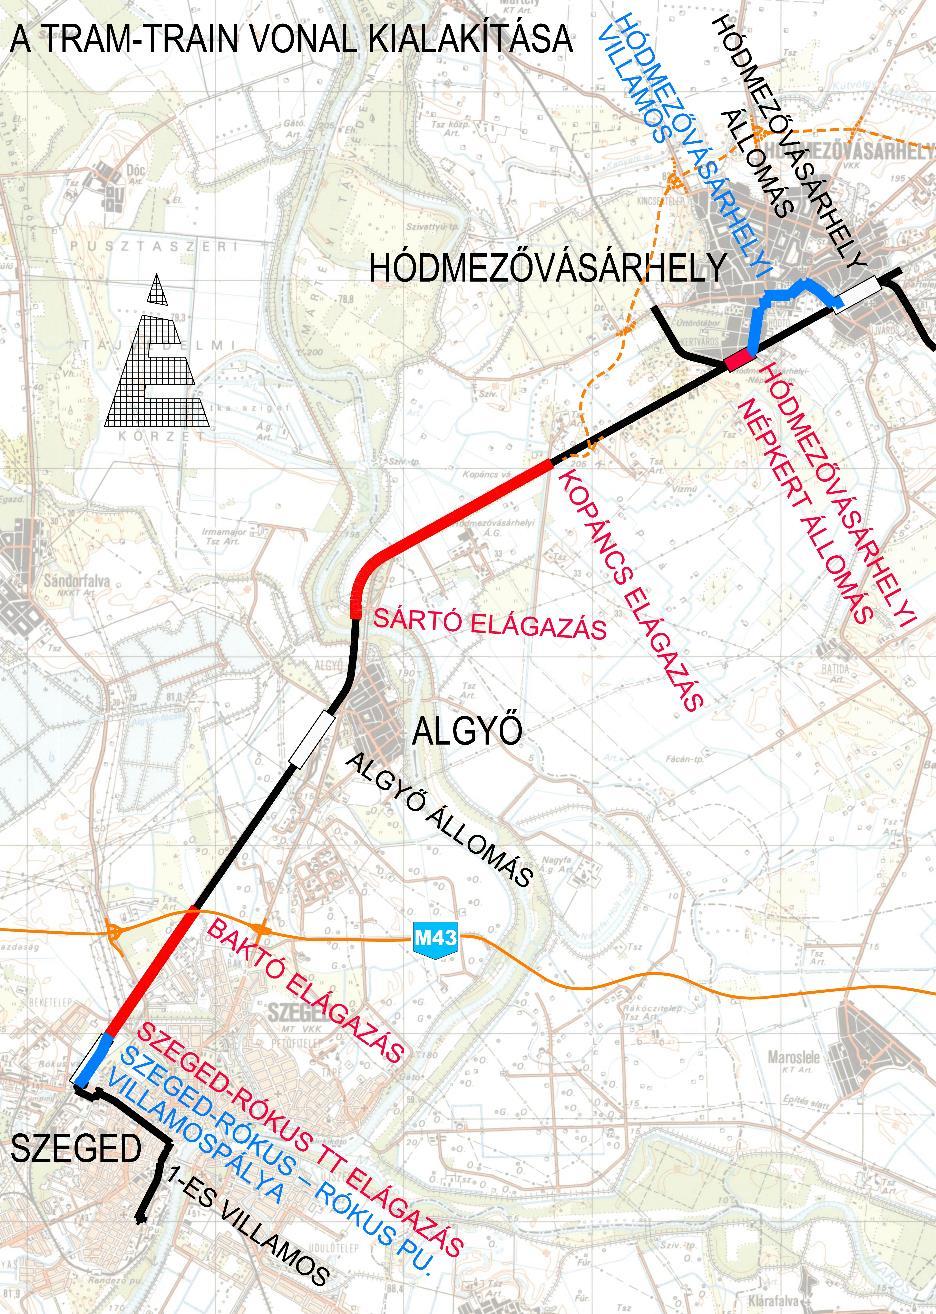 összekötés; Szeged Hódmezővásárhely 135 sz. vasútvonal; Szeged-Rókus pu.